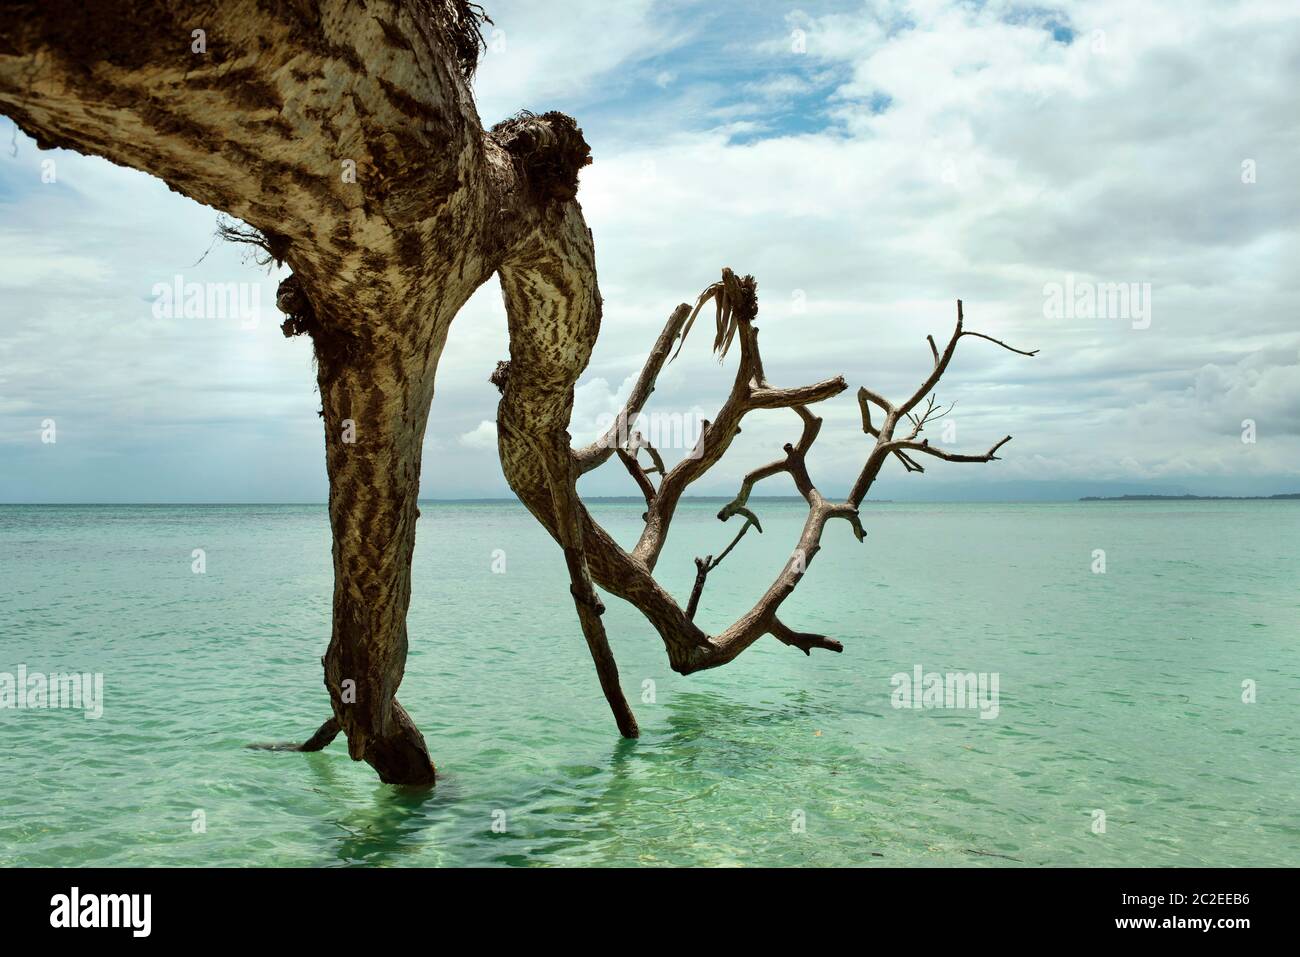 Nahaufnahme eines toten, gefallenen Baumes, der in türkisfarbenes Wasser reicht, am Strand von Cayo Zapatilla #1 Insel, Provinz Bocas del Toro, Panama. Oktober 2018 Stockfoto